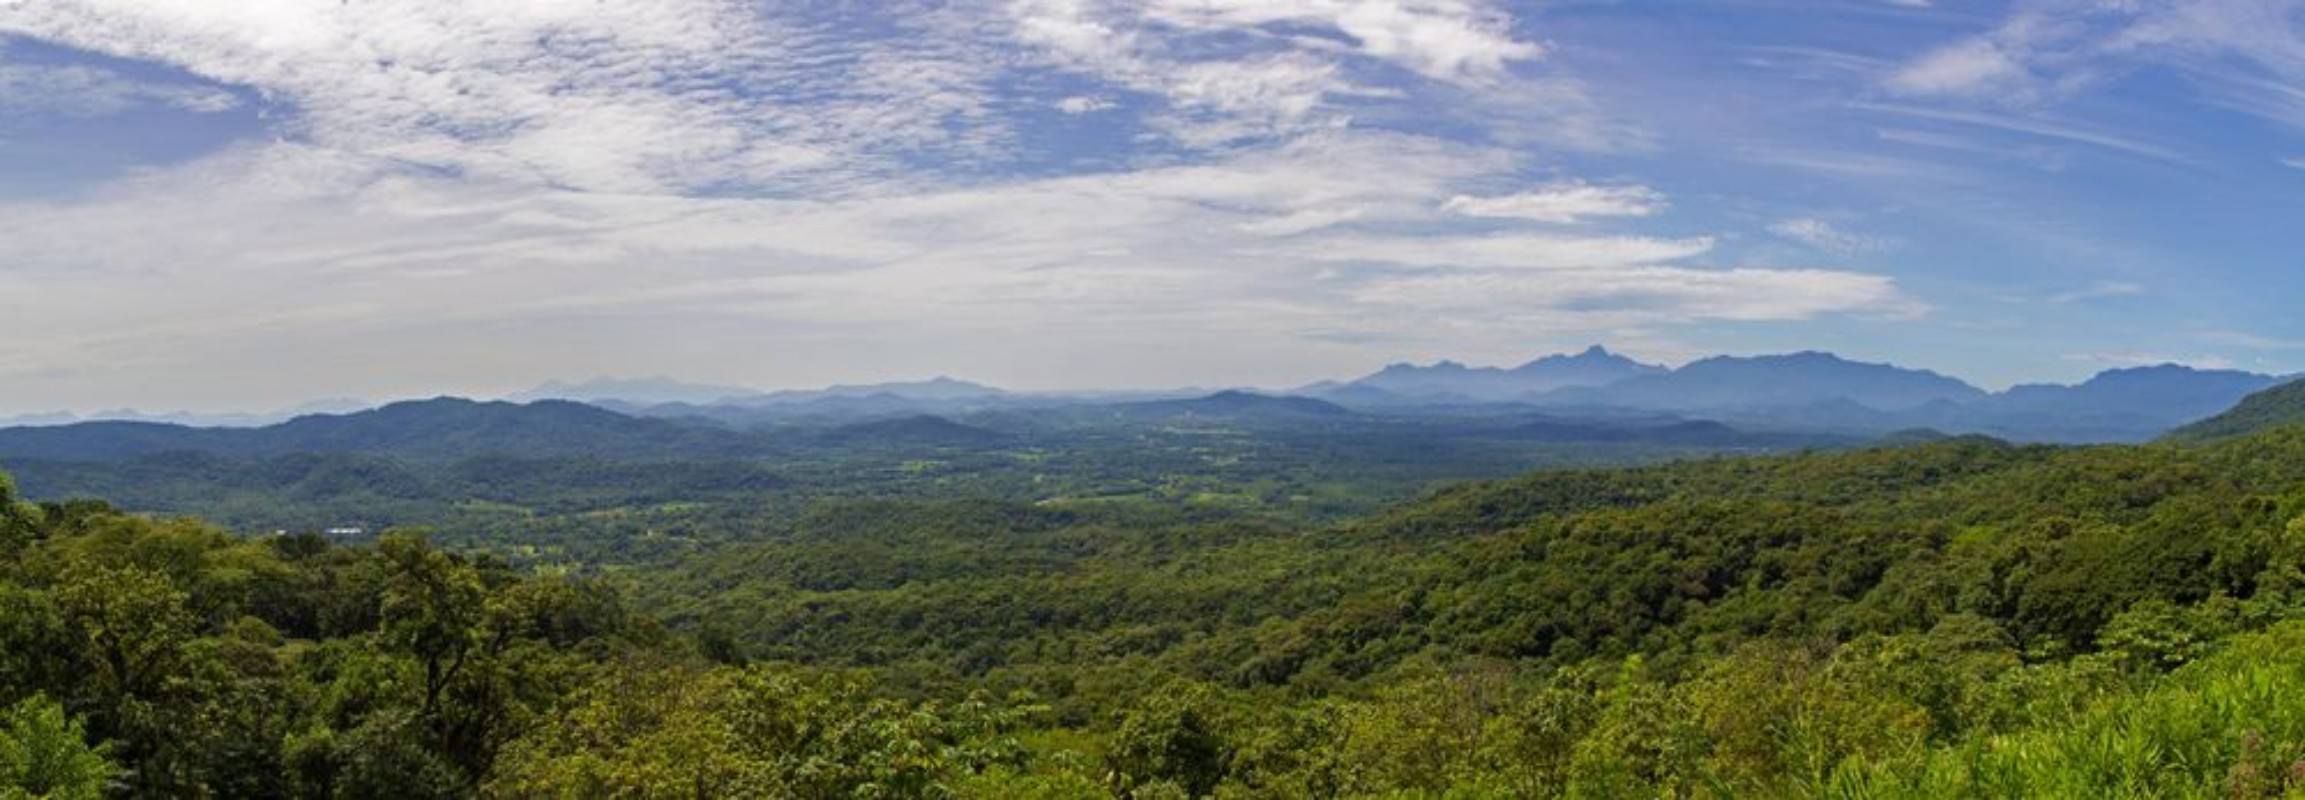 Picture of Brazilian landscape